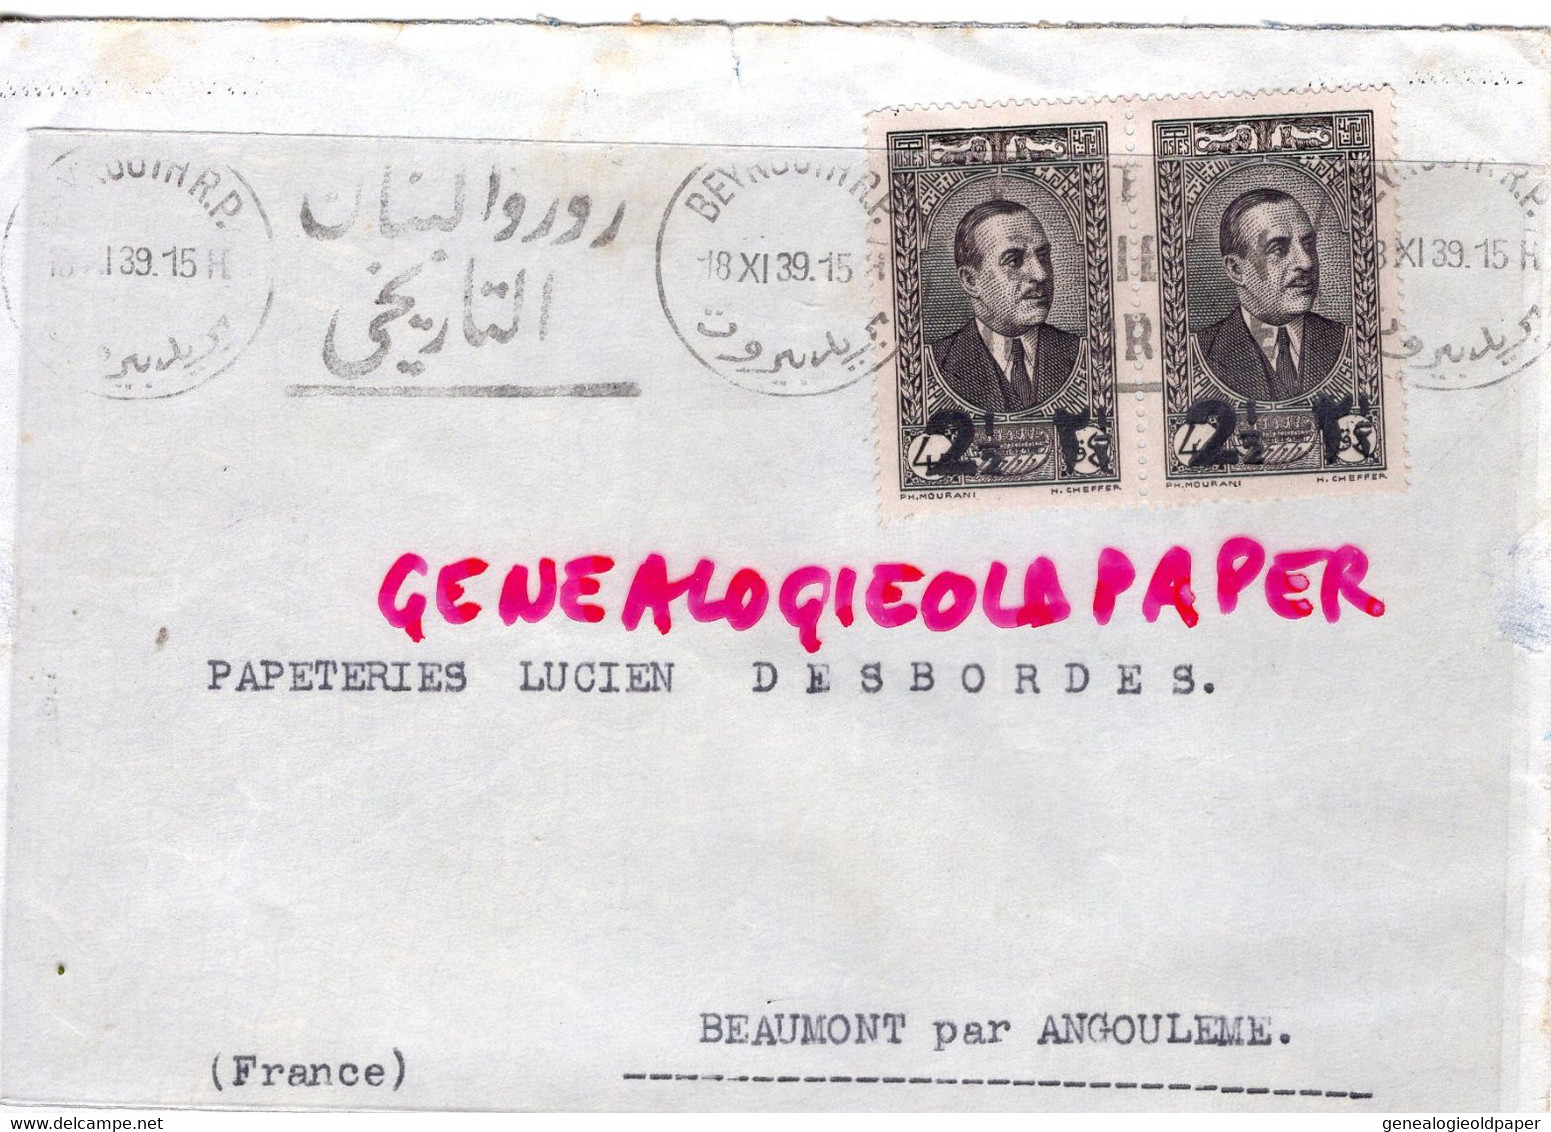 LIBAN- LETTRE MAISON P. ANGHELOPOULO - BEYROUTH- A PAPETERIE LUCIEN DESBORDES -BEAUMONT PAR ANGOULEME-1939 - Lebanon